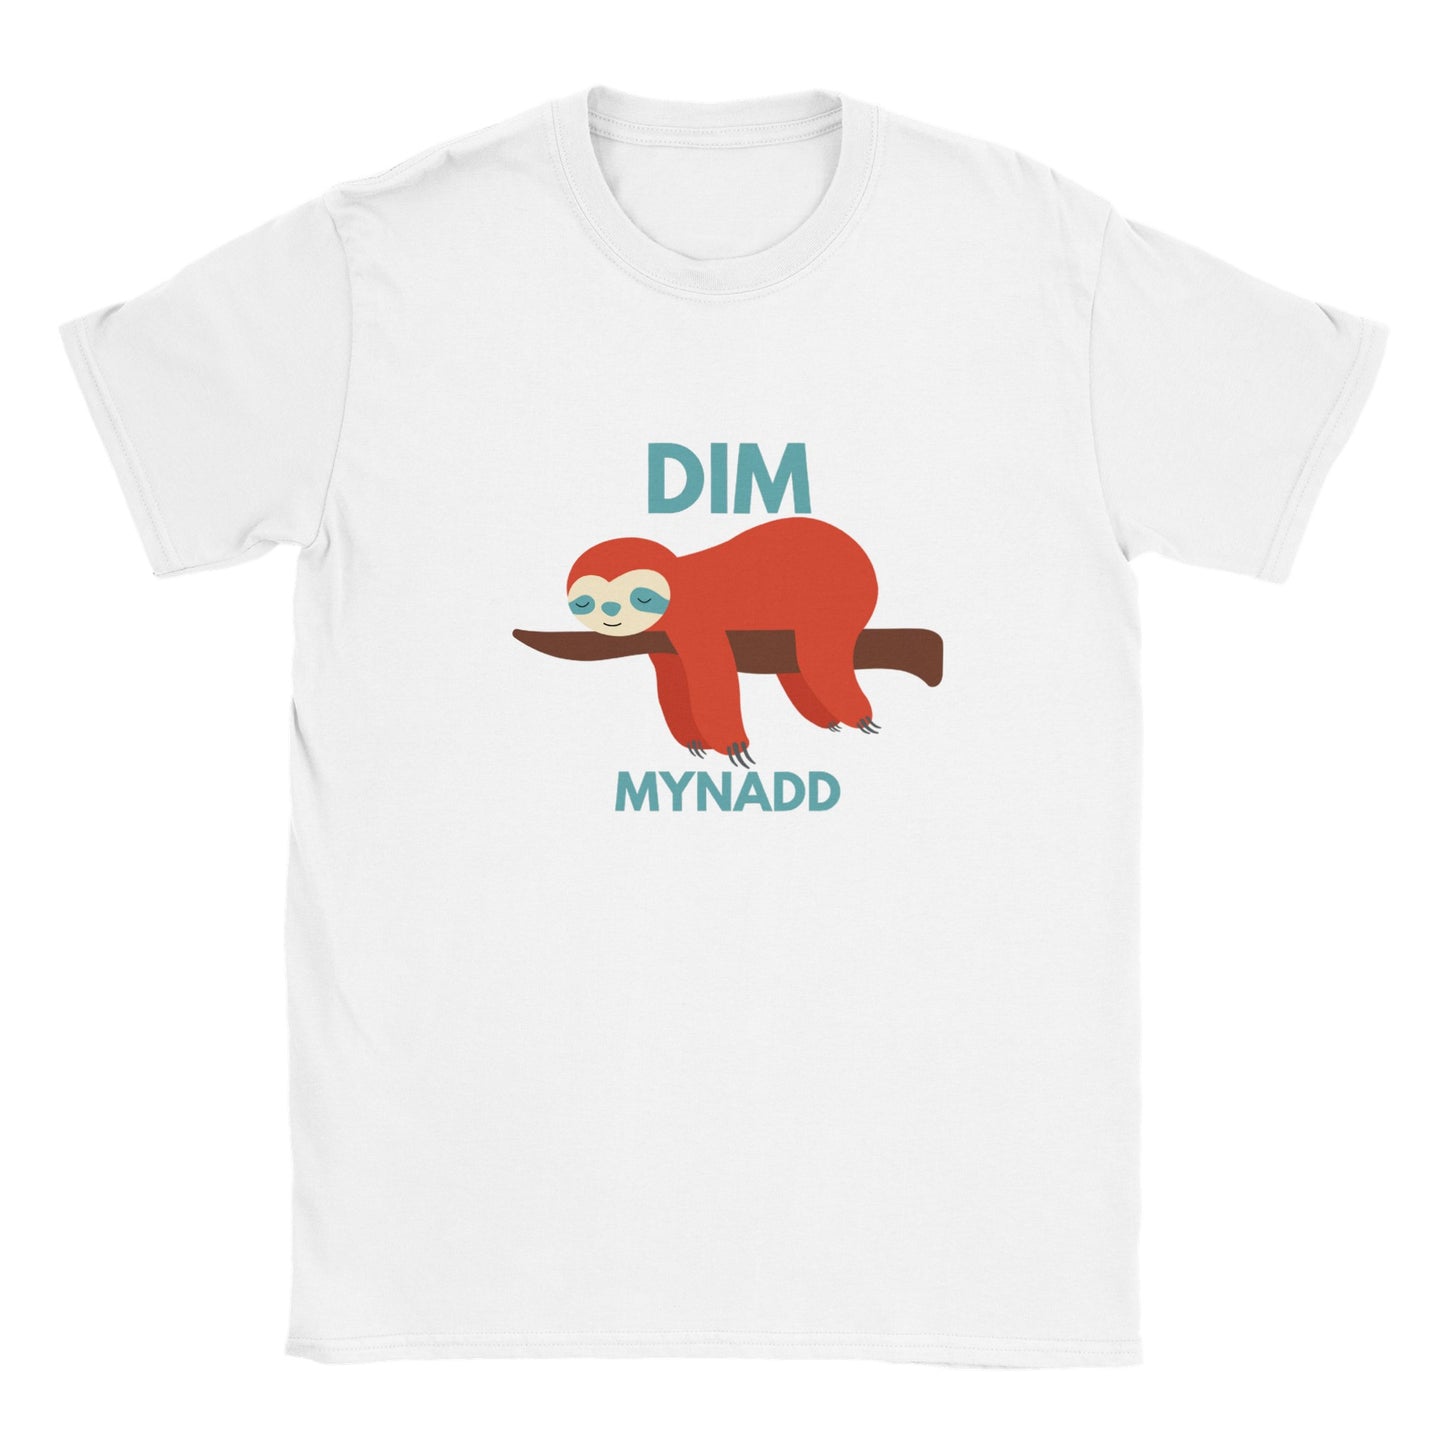 Dim Mynadd - Classic Kids Crewneck T-shirt